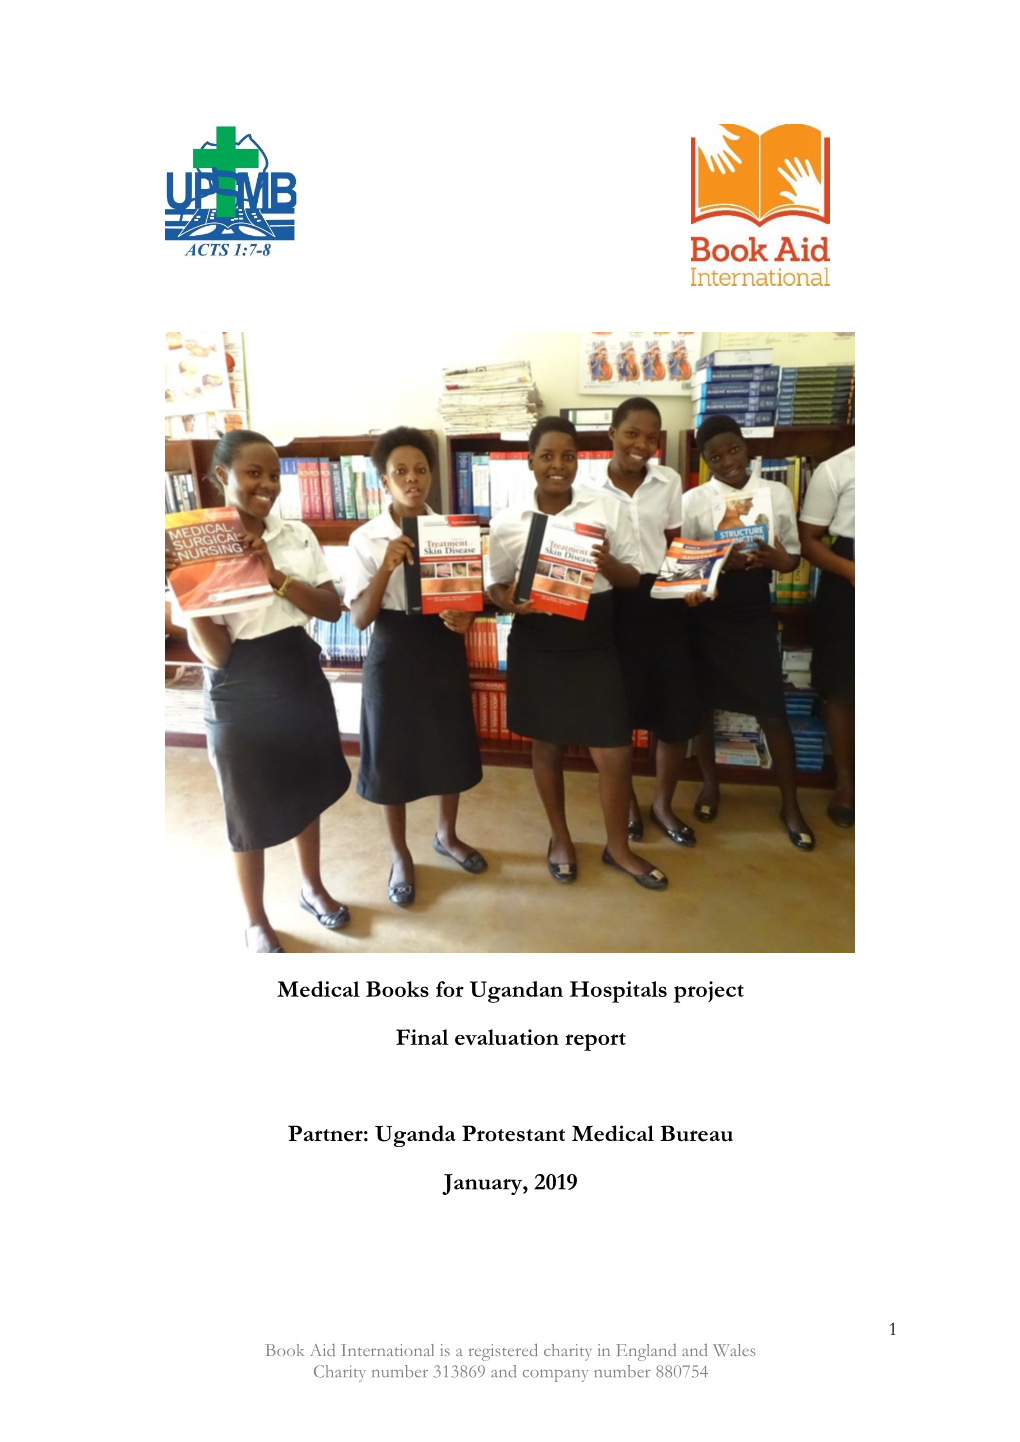 Medical Books for Ugandan Hospitals Project Final Evaluation Report Partner